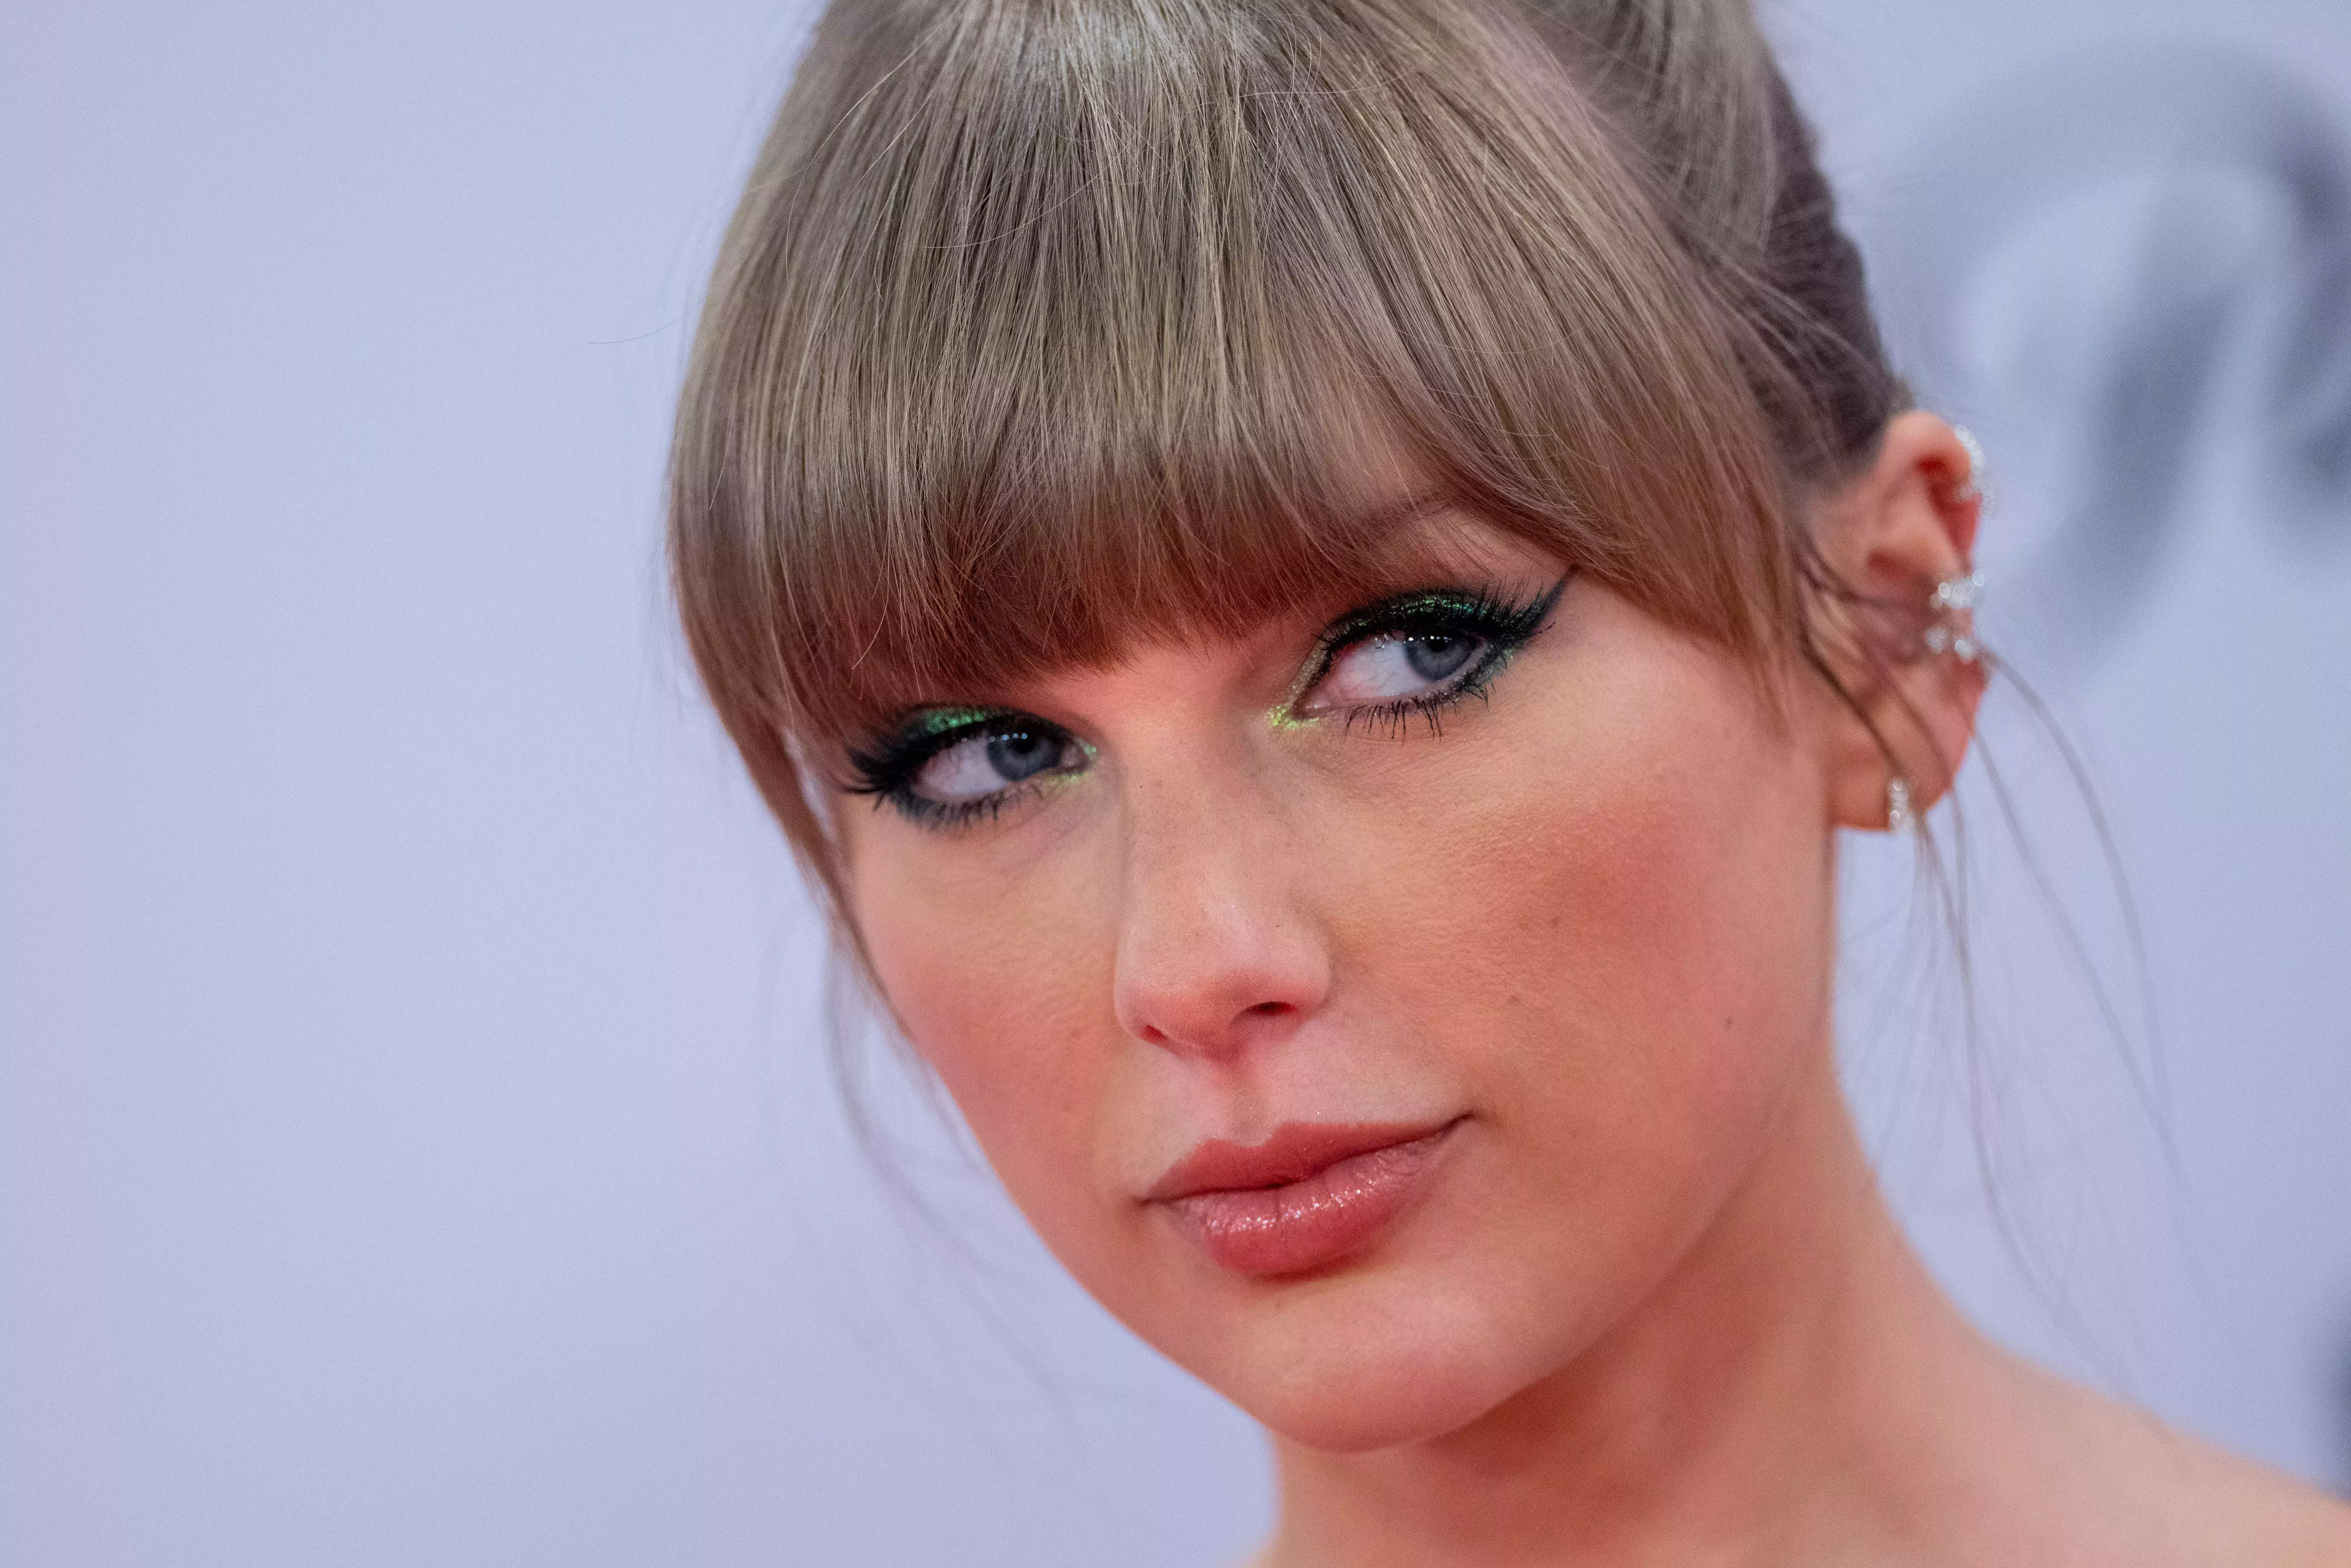 

	
		El Congreso celebrará una audiencia tras el fiasco de Ticketmaster y Taylor Swift
	
	